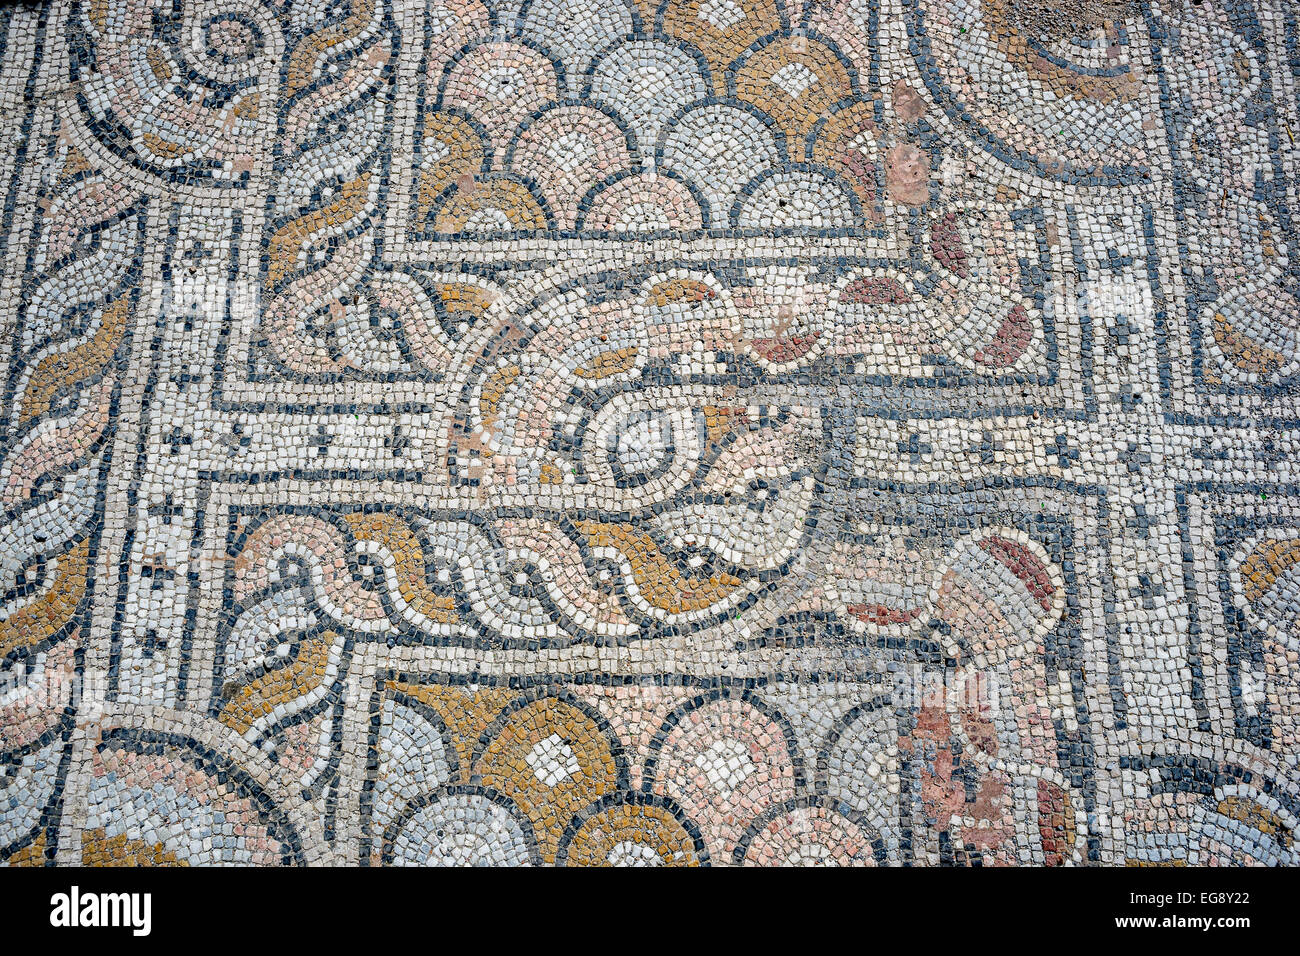 Ancient Roman mosaics City of Kos Stock Photo